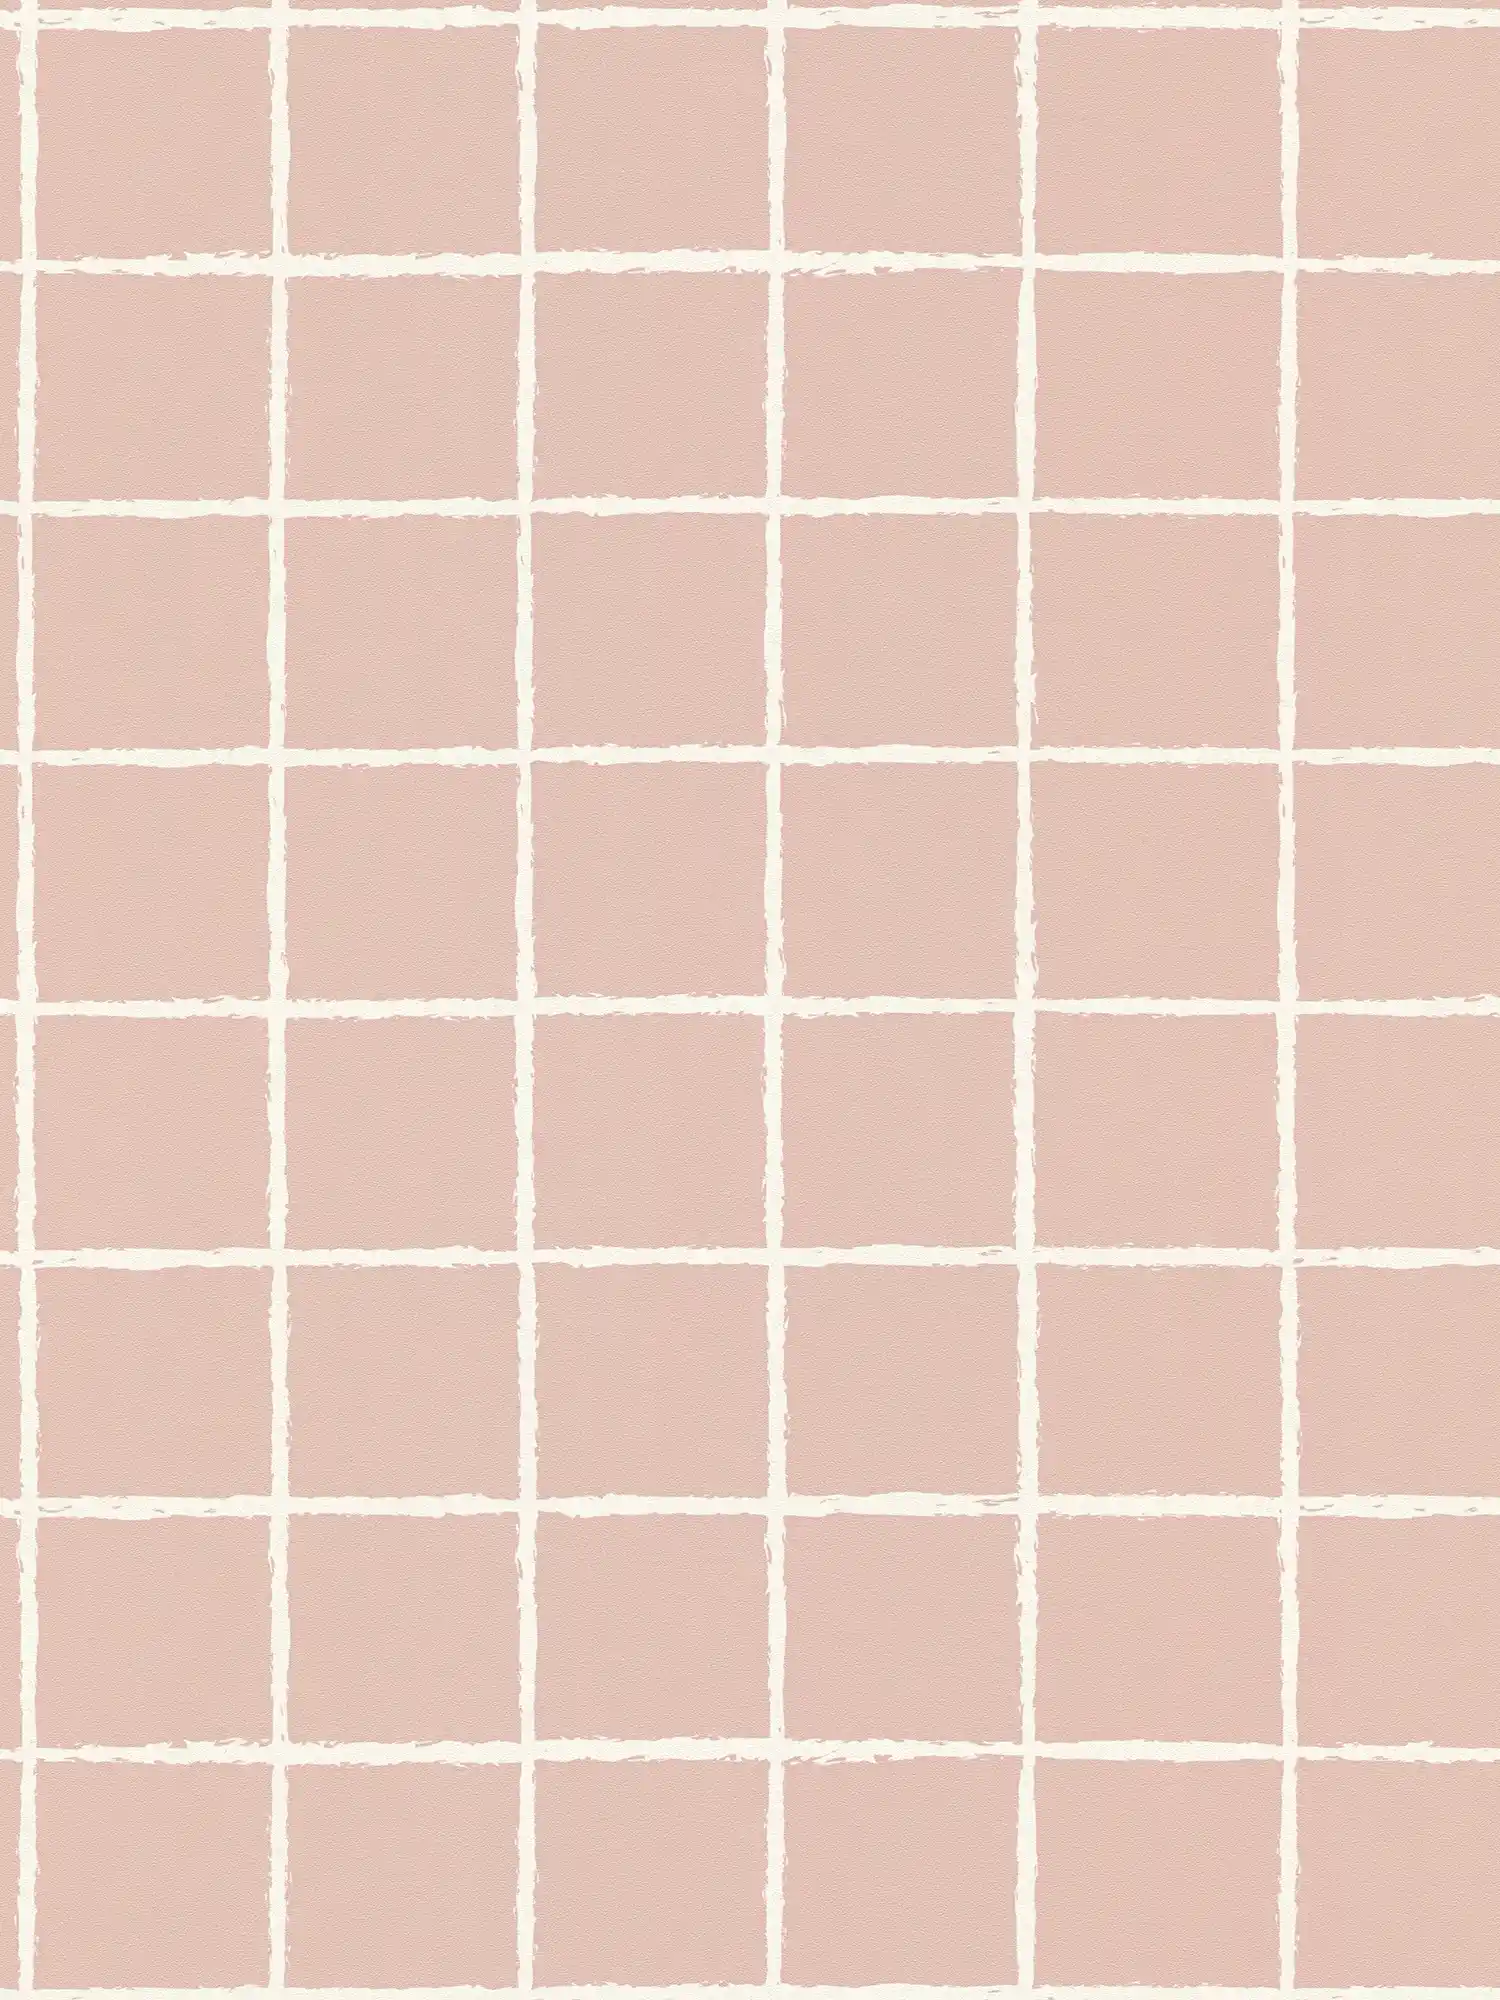         Vliestapete mit gezeichneten Netz-Muster – Rosa, Weiß
    